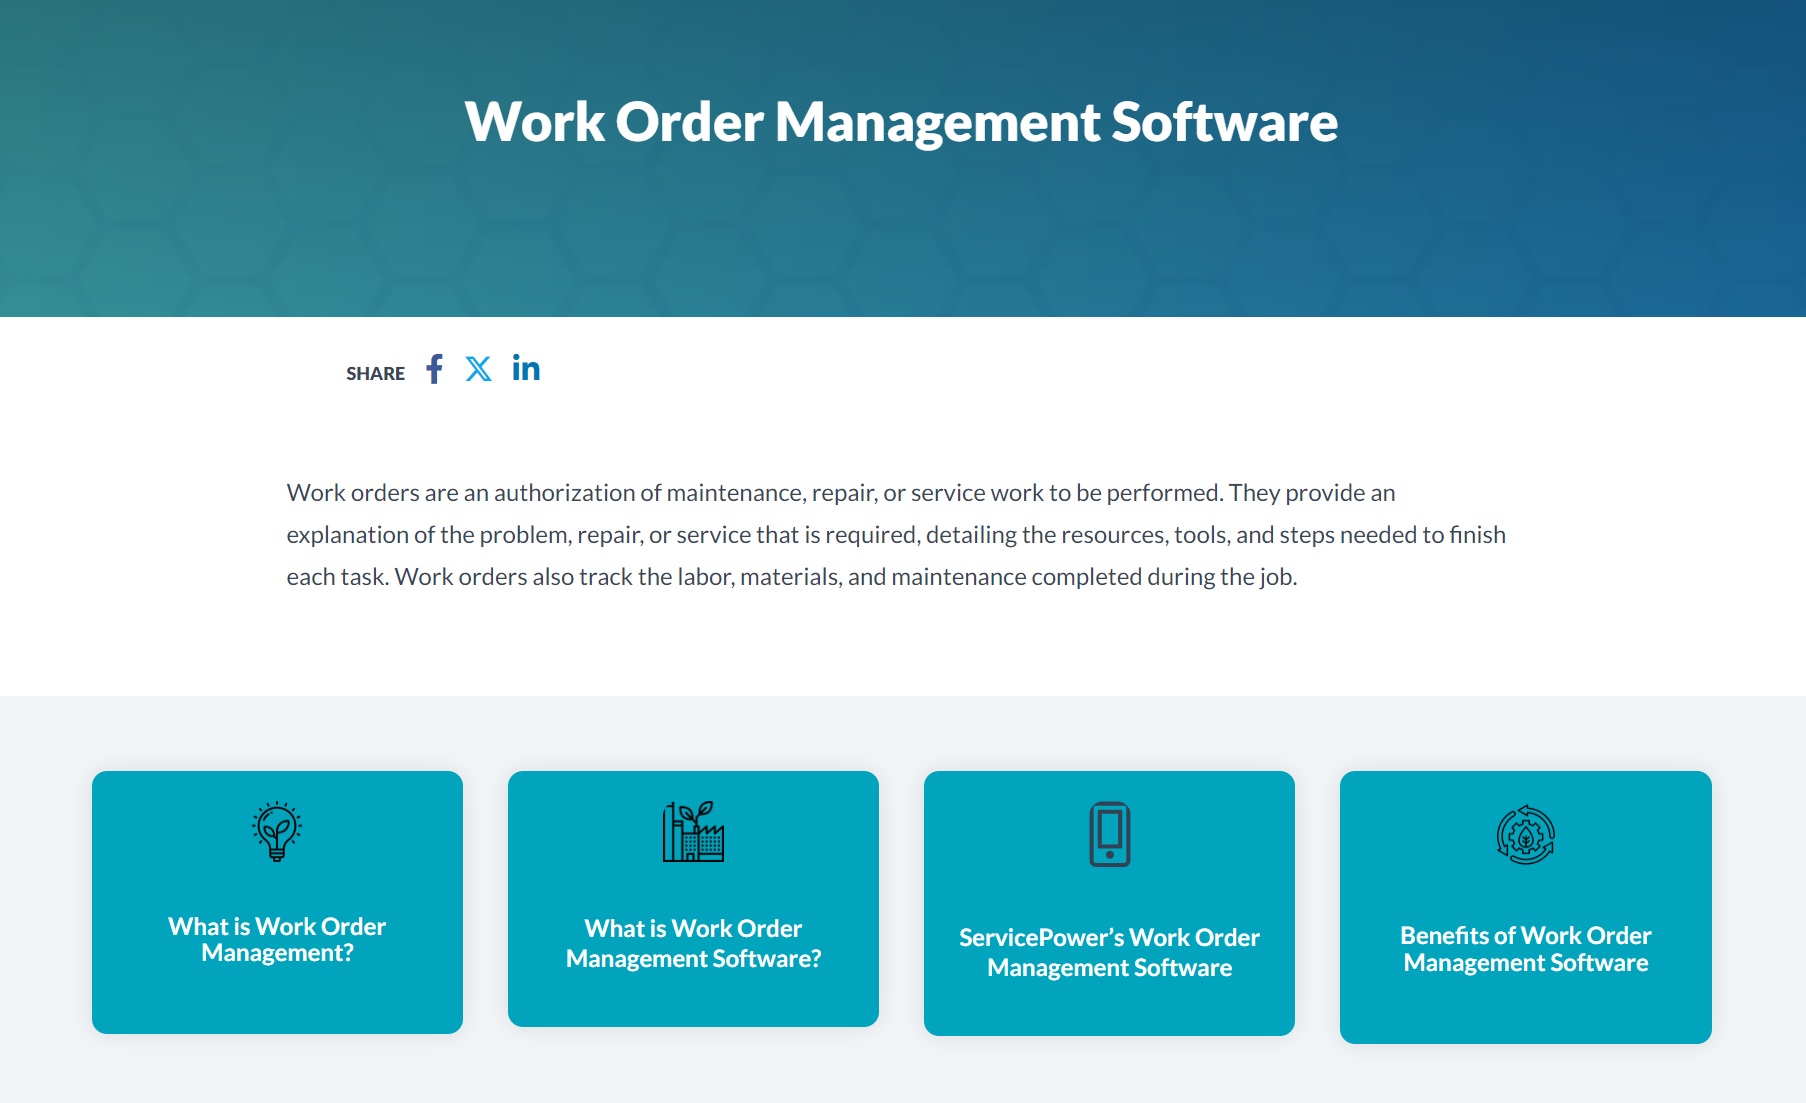 Work Order Management Software ServicePower